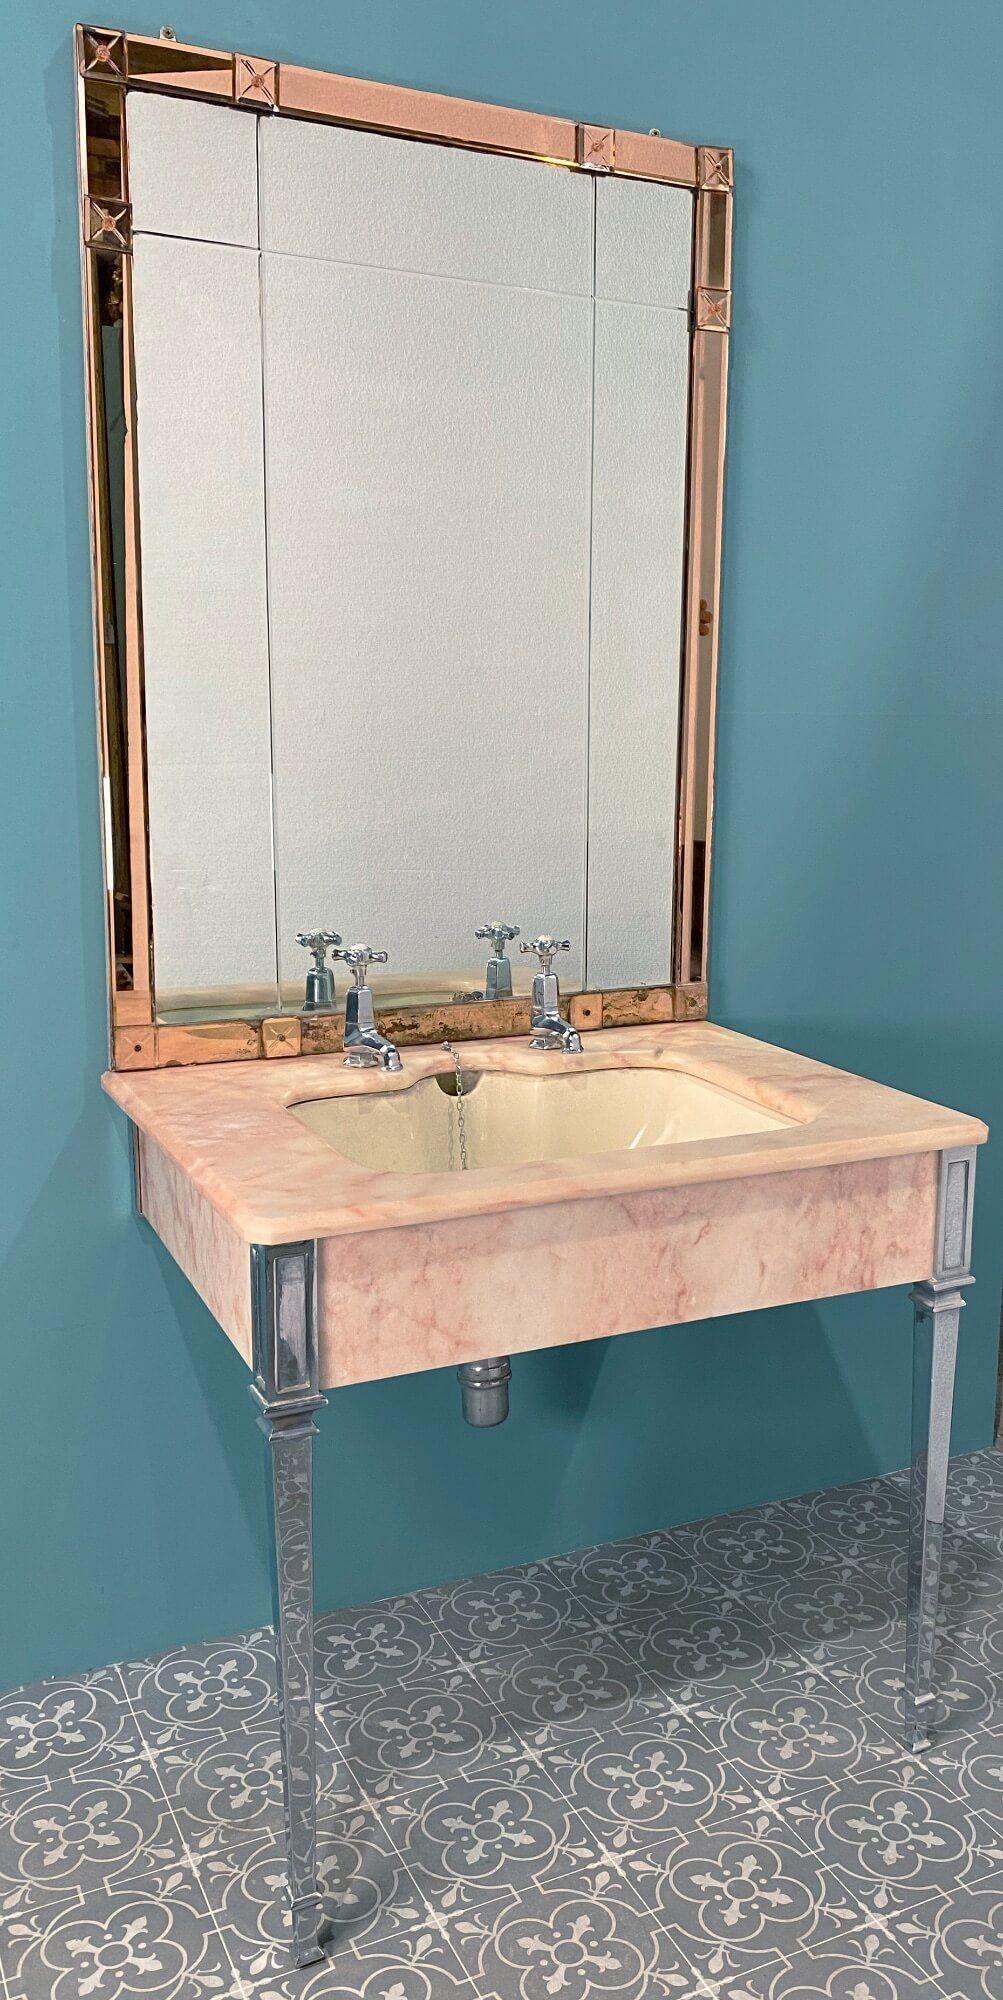 Un impressionnant lavabo en marbre de style Art Deco anglais avec son dosseret en miroir d'origine, fabriqué par John Bolding and Sons, fabricants d'appareils sanitaires haut de gamme des 19e et 20e siècles. Ce superbe lavabo se trouvait autrefois